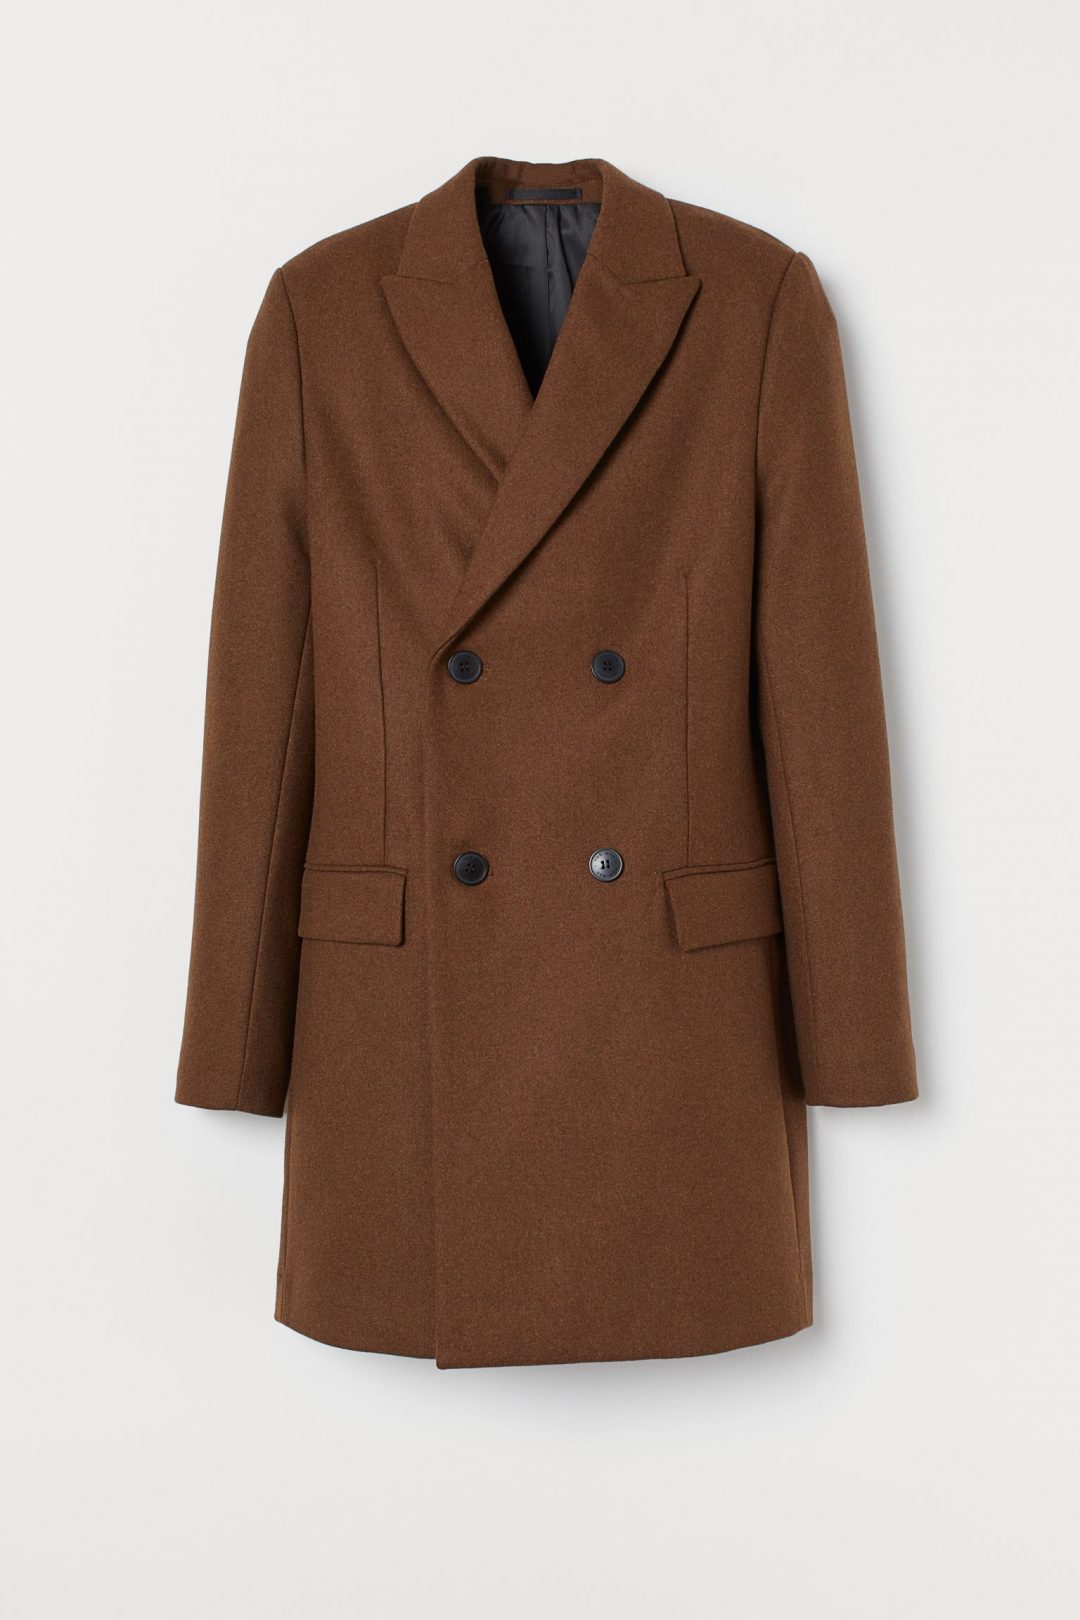 H&M muški kaput zima 2020